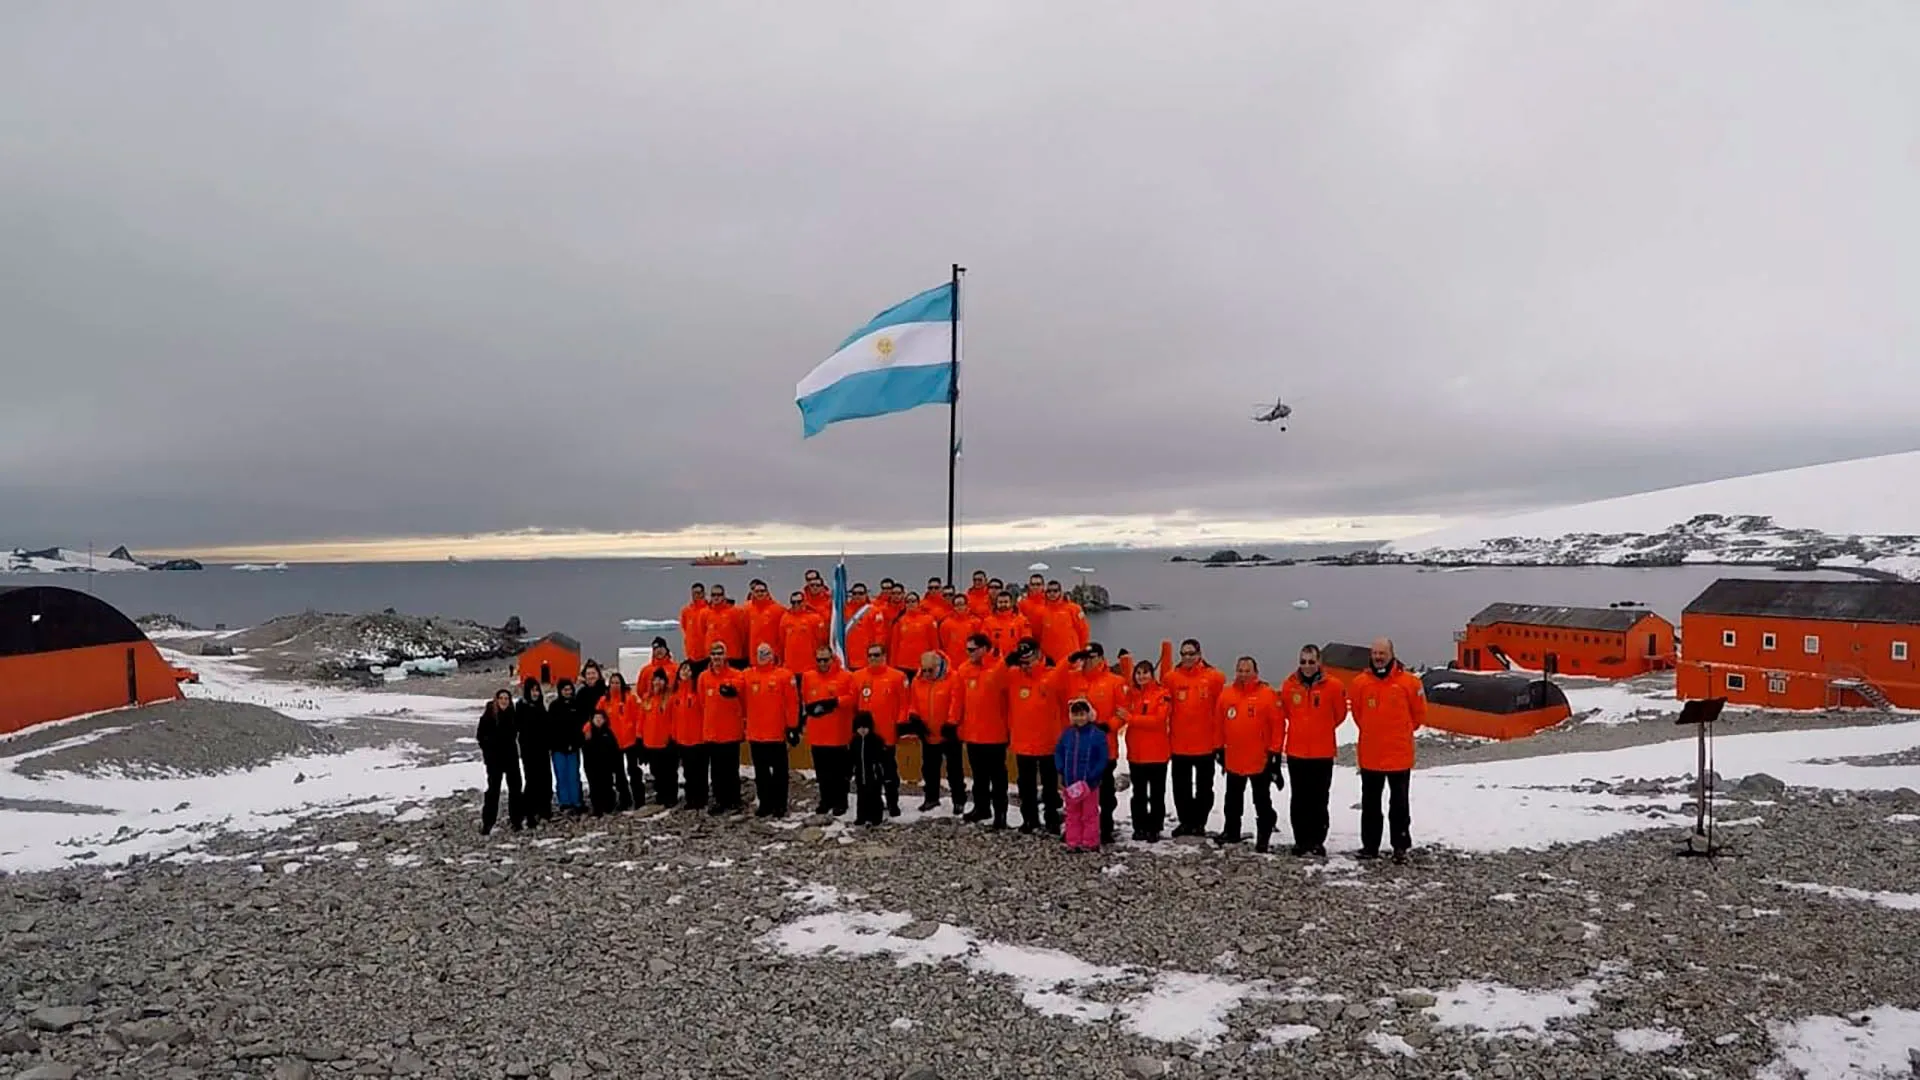 FOTO: El legislador ideó una actividad por año en la Antártida para defender la soberanía.